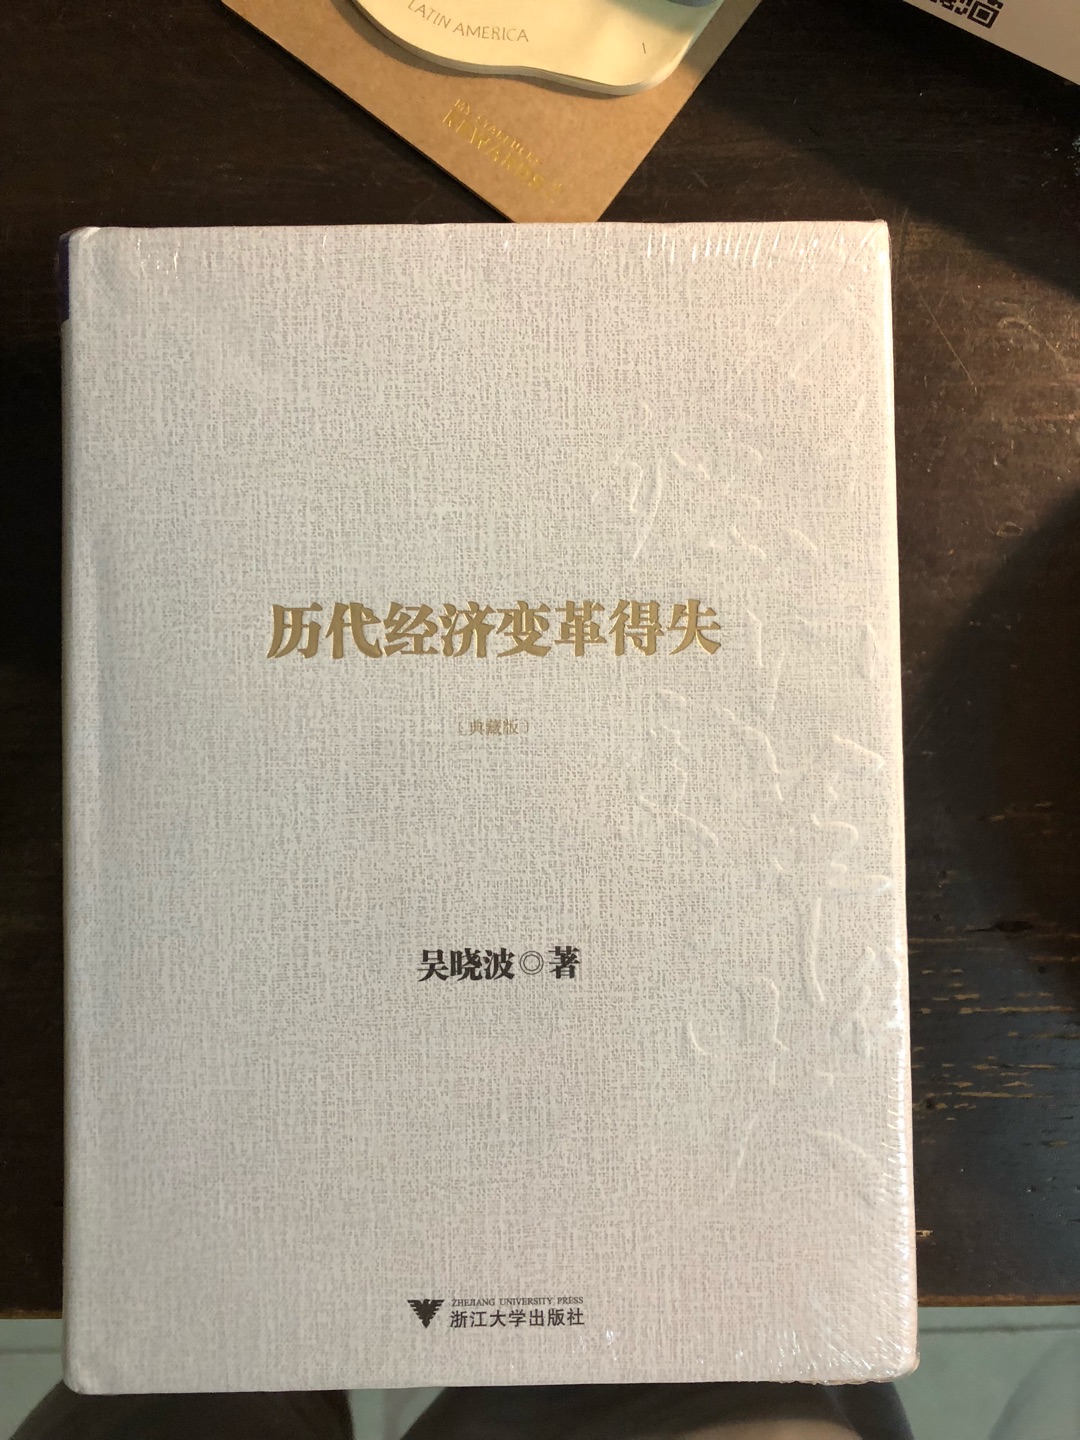 一直看吴晓波的书，带着人文气息的经济读物，很不错。